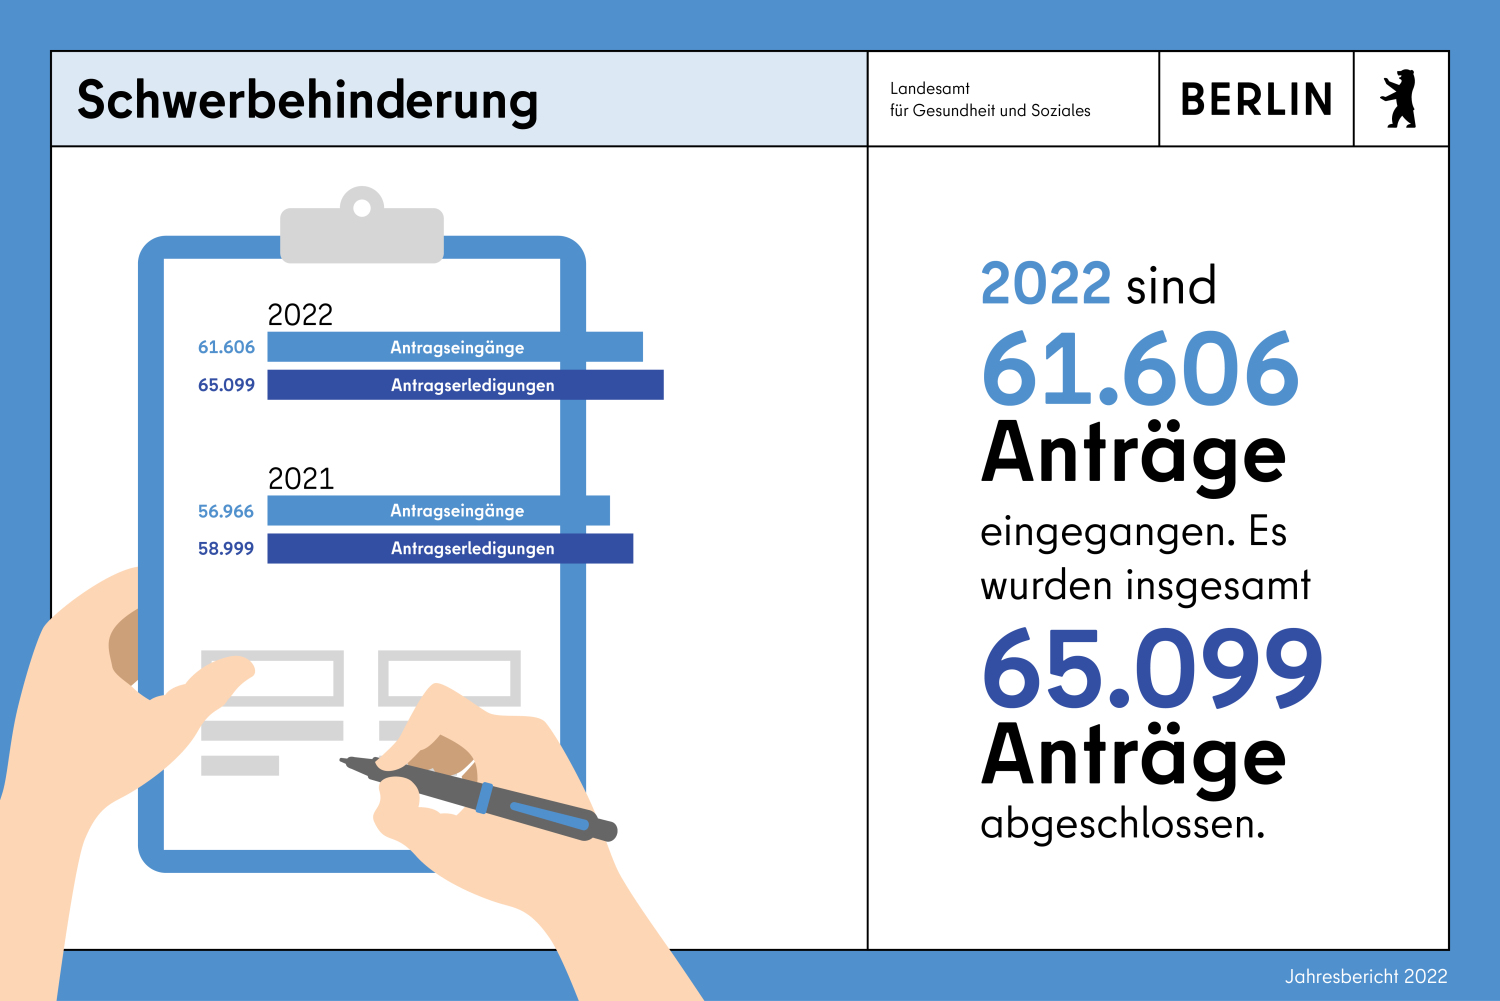 Infokachel Schwerbehinderung. 2022 sind 61606 Anträge eingegangen. Es wurden insgesamt 65099 Anträge abgeschlossen. 